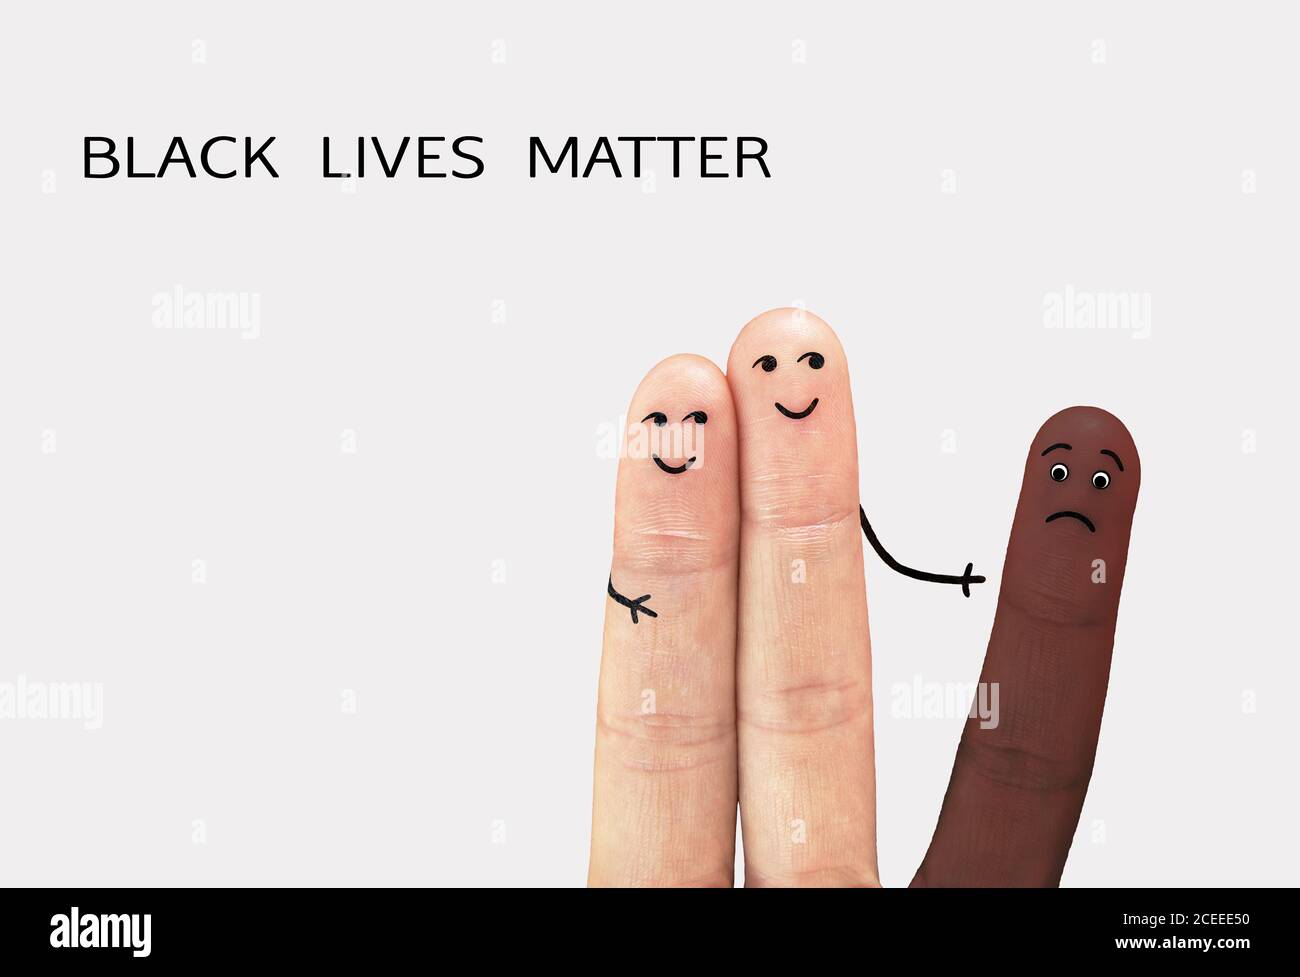 Motivationsposter gegen Rassismus und Diskriminierung. Schwarze Leben sind wichtig. Anti-Diskriminierung, helfen Kampf Rassismus Banner Konzept. Stockfoto